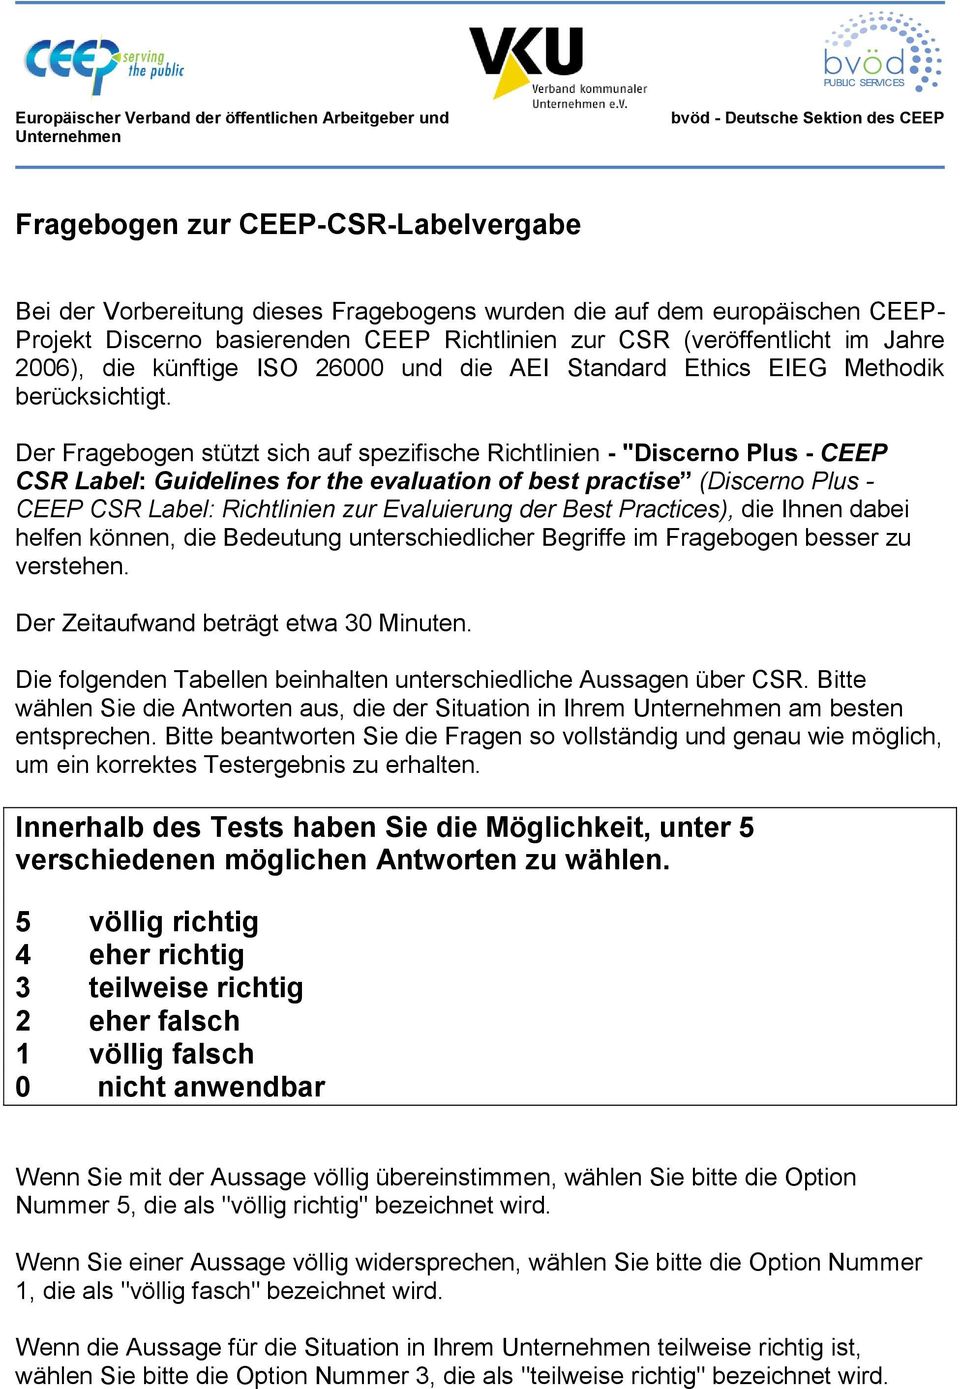 Der Fragebogen stützt sich auf spezifische Richtlinien - "Discerno Plus - CEEP CSR Label: Guidelines for the evaluation of best practise (Discerno Plus - CEEP CSR Label: Richtlinien zur Evaluierung